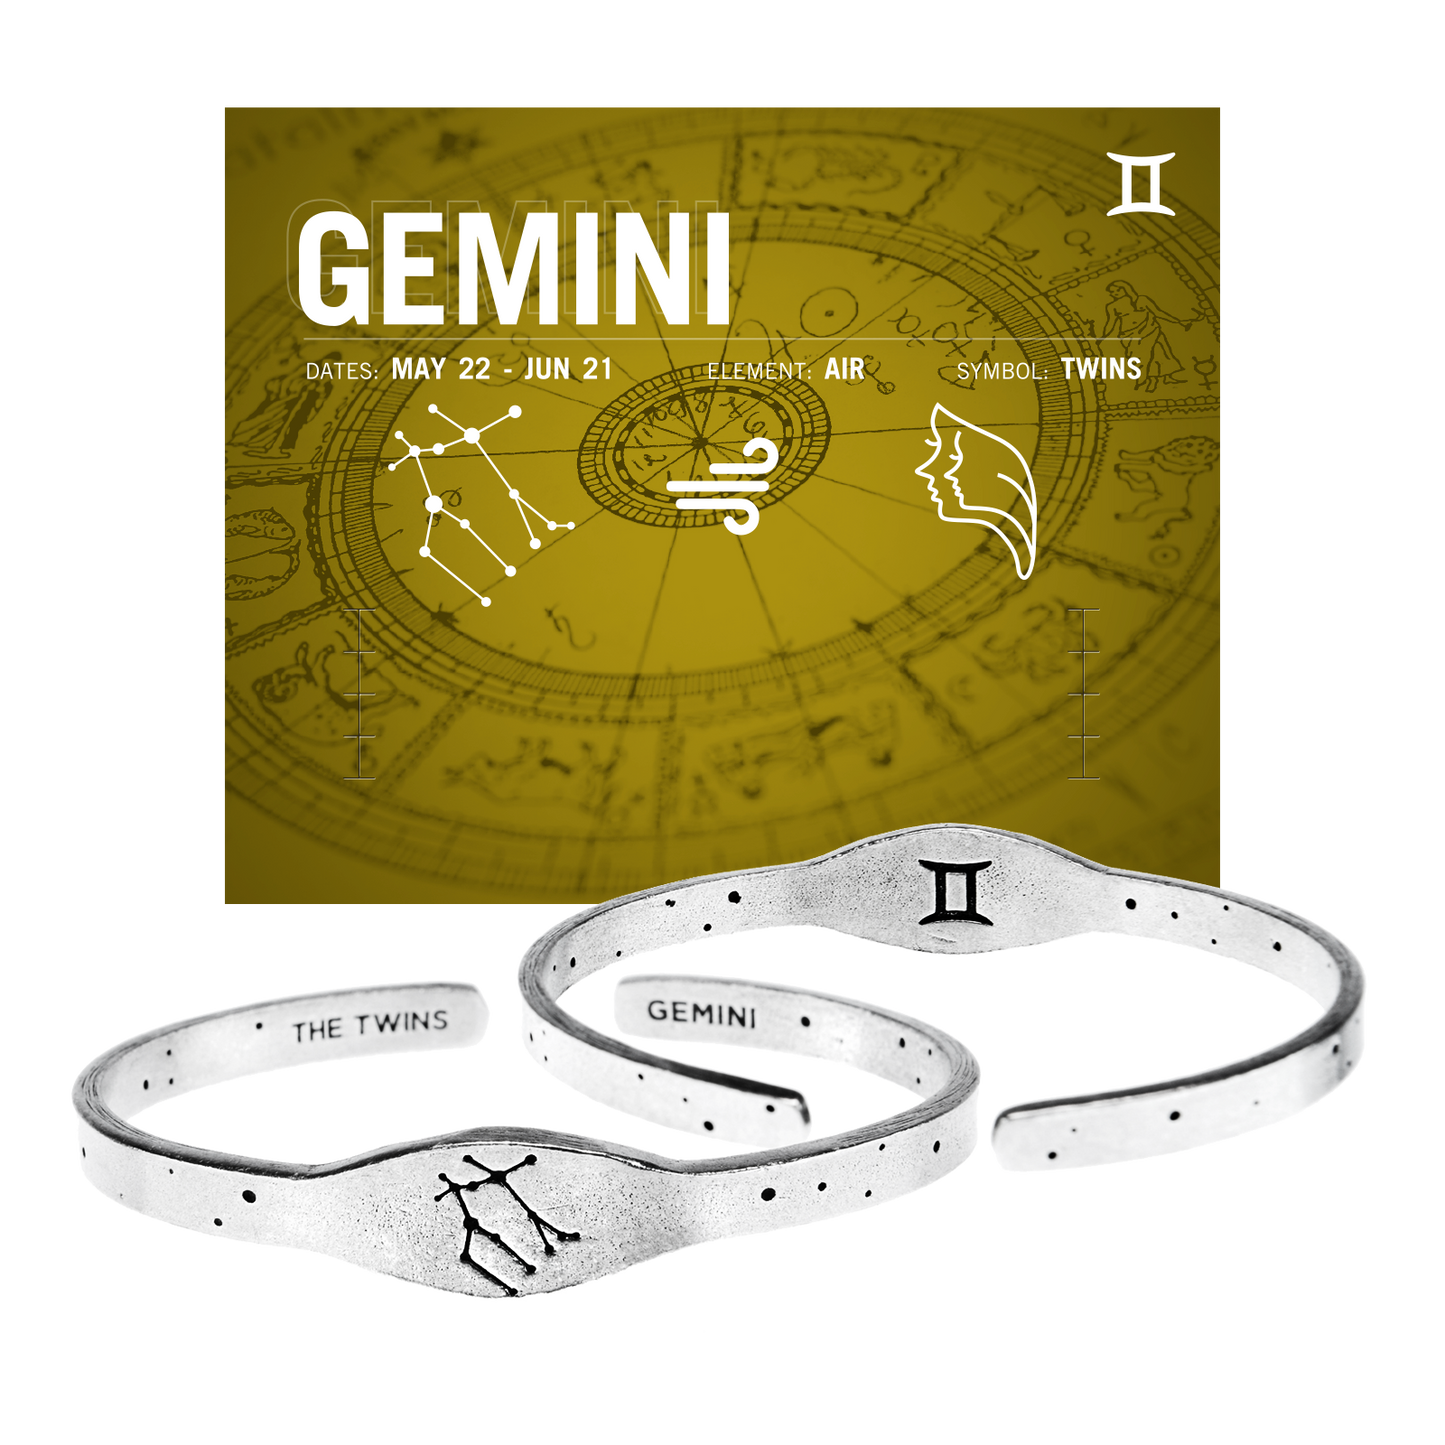 Zodiac Cuff Bracelet - Gemini